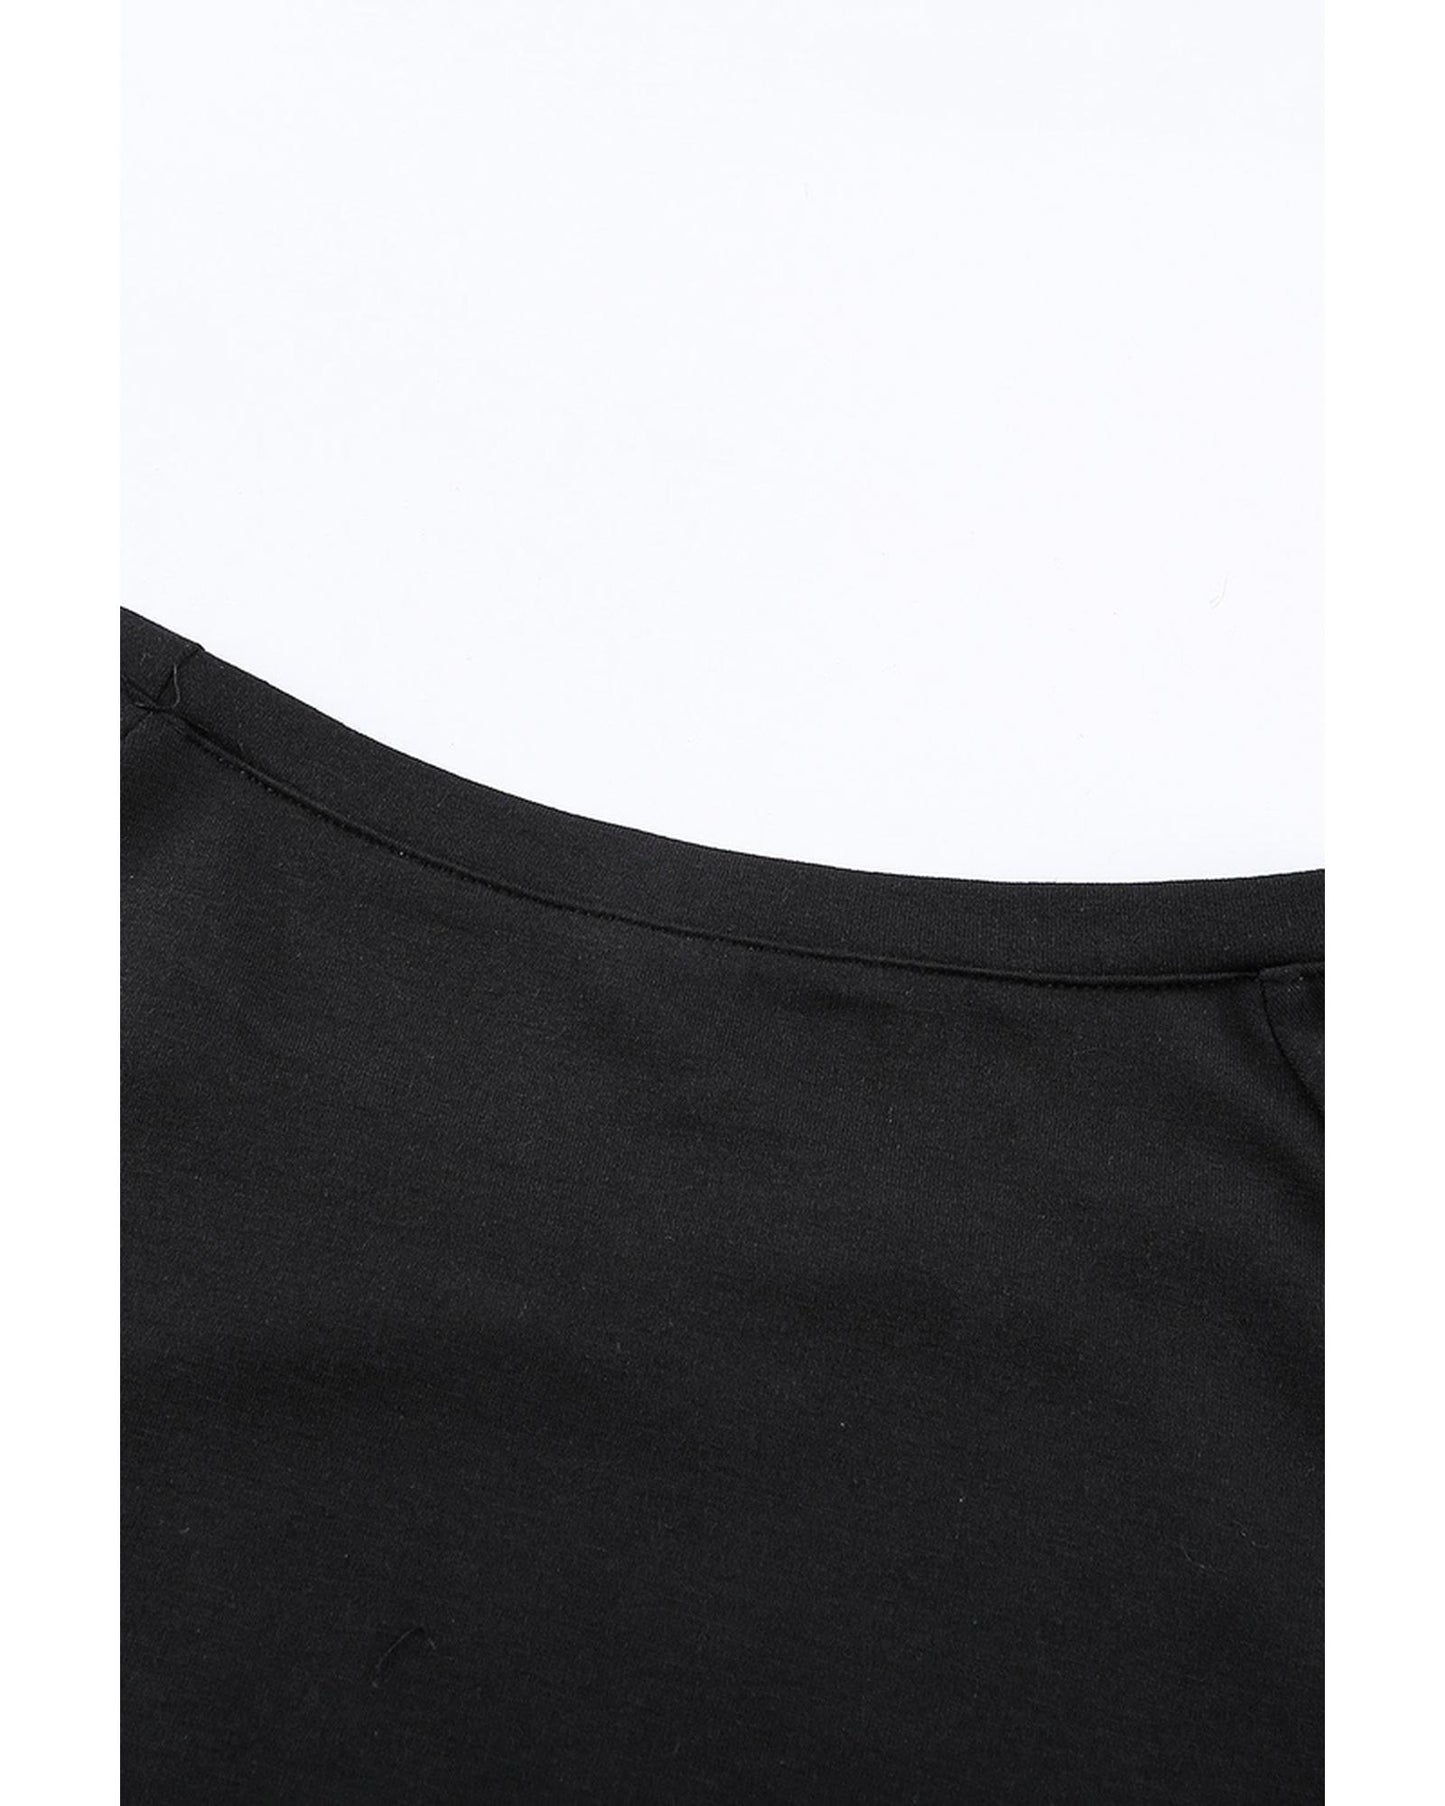 Azura Exchange Black Sweatshirt - M